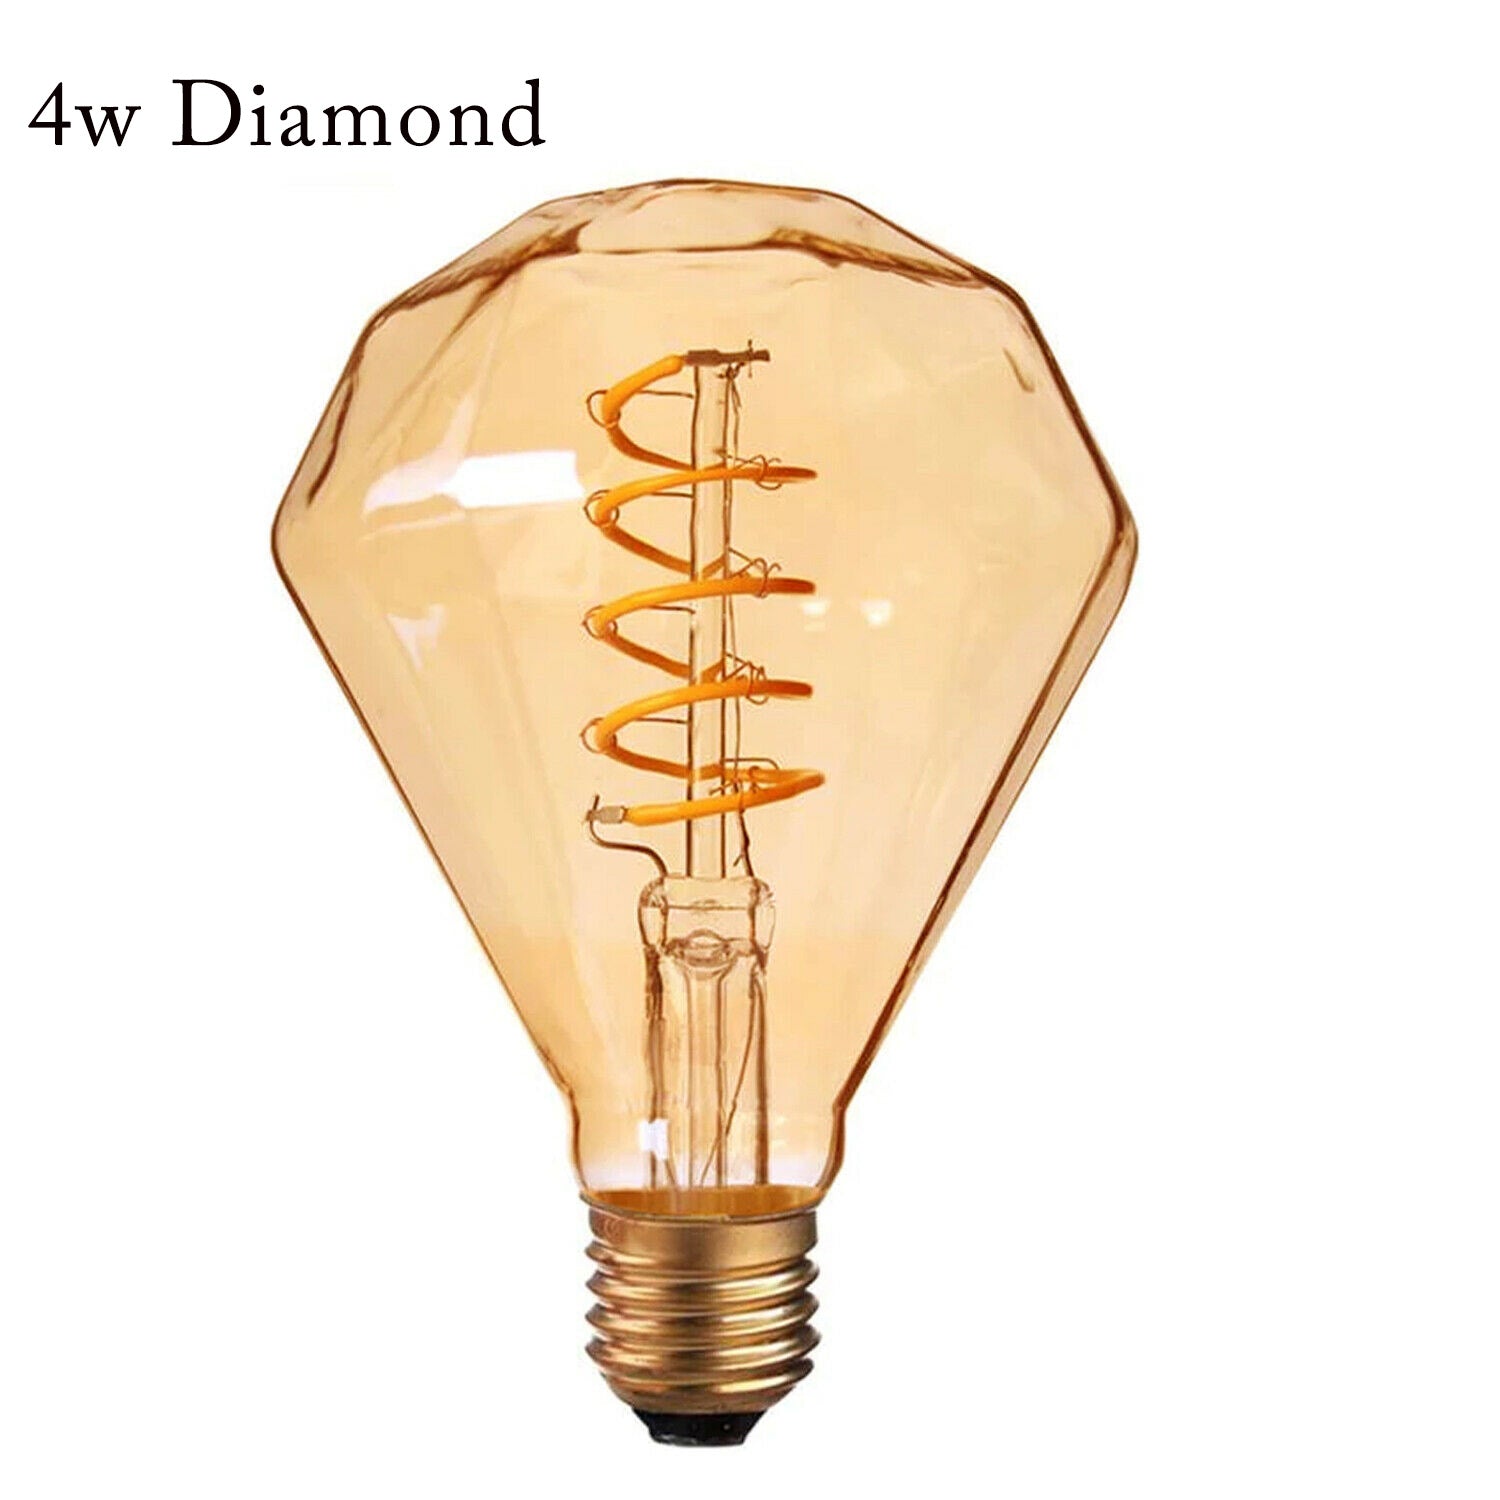 LED Soft Light Dimond E27 4W Filament Glass Retro Warm White~1043 - LEDSone UK Ltd